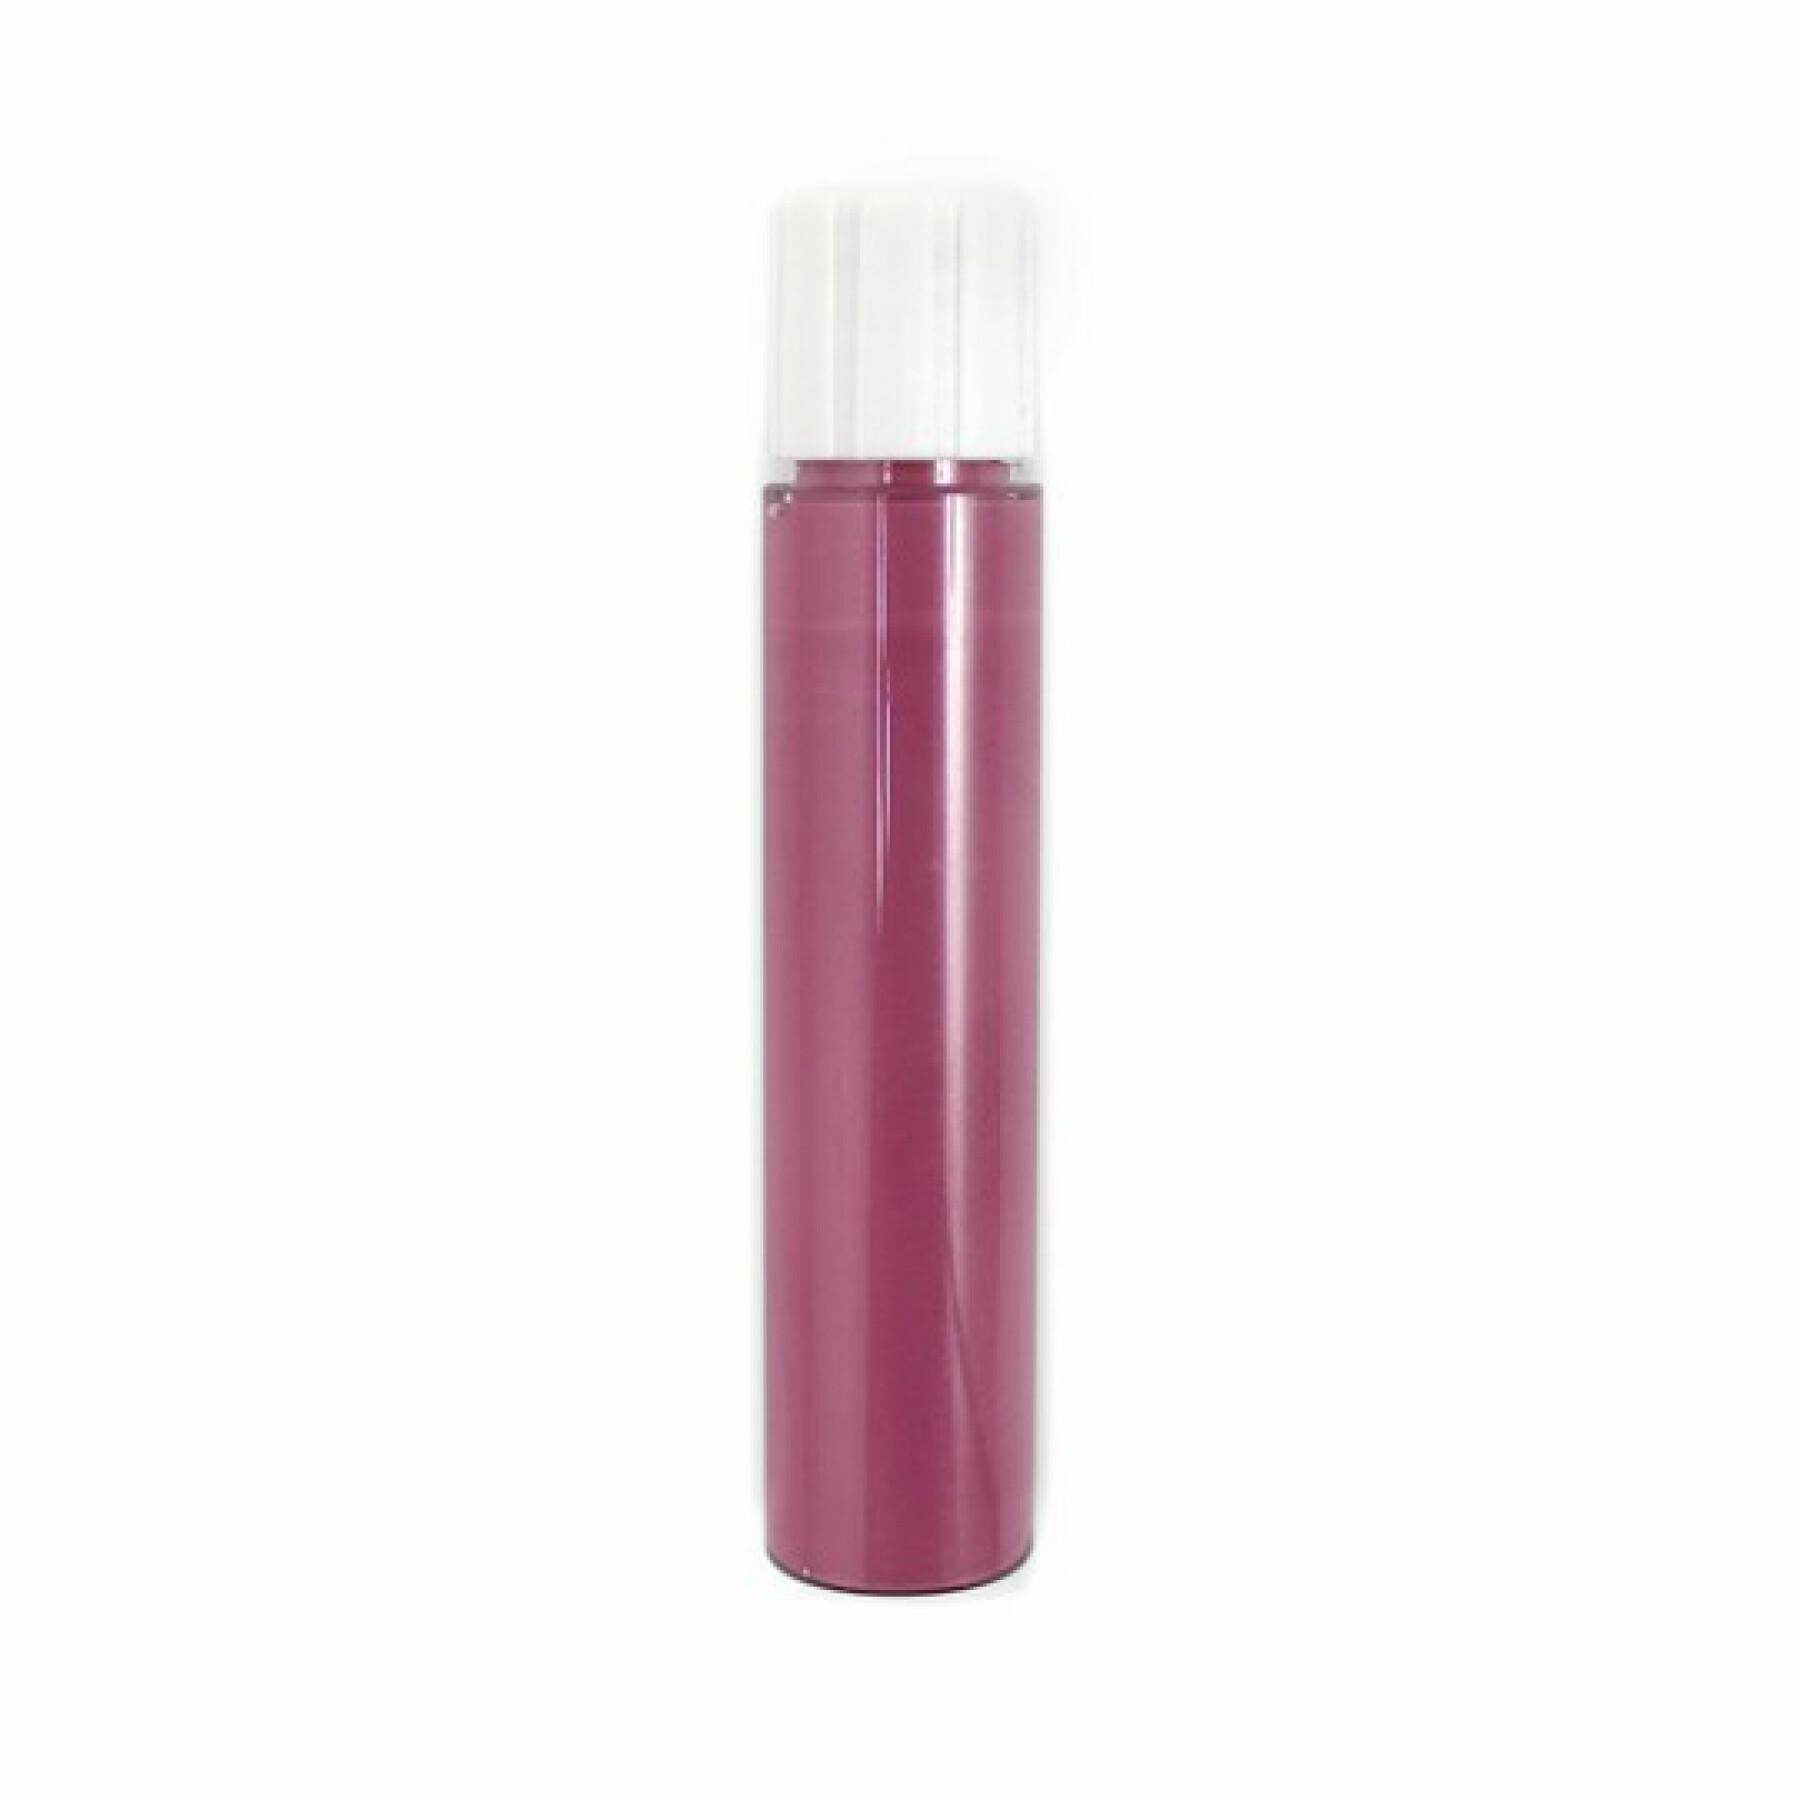 Lip Ink Refill 441 roze emma femme Zao - 3,8 ml